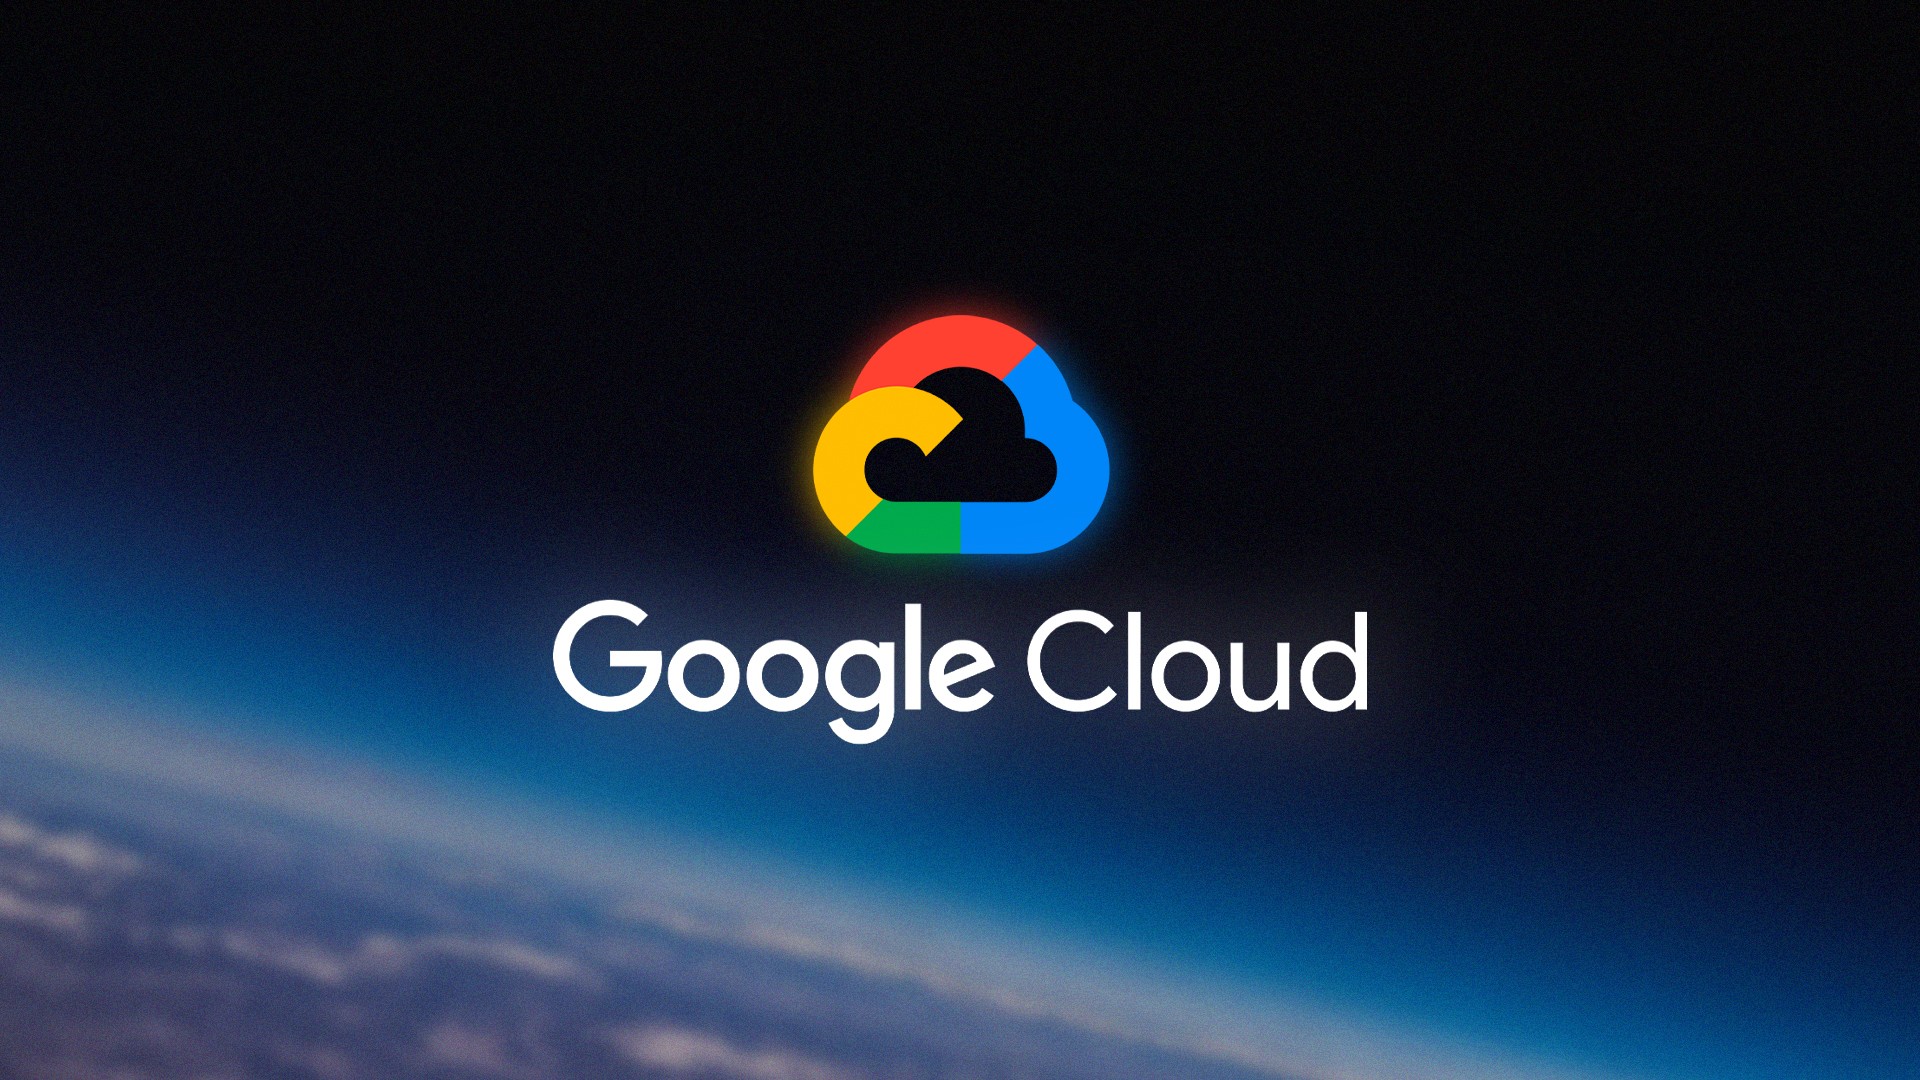 Google Cloud anuncia novos recursos baseados em Inteligência Artificial para varejistas - TudoCelular.com